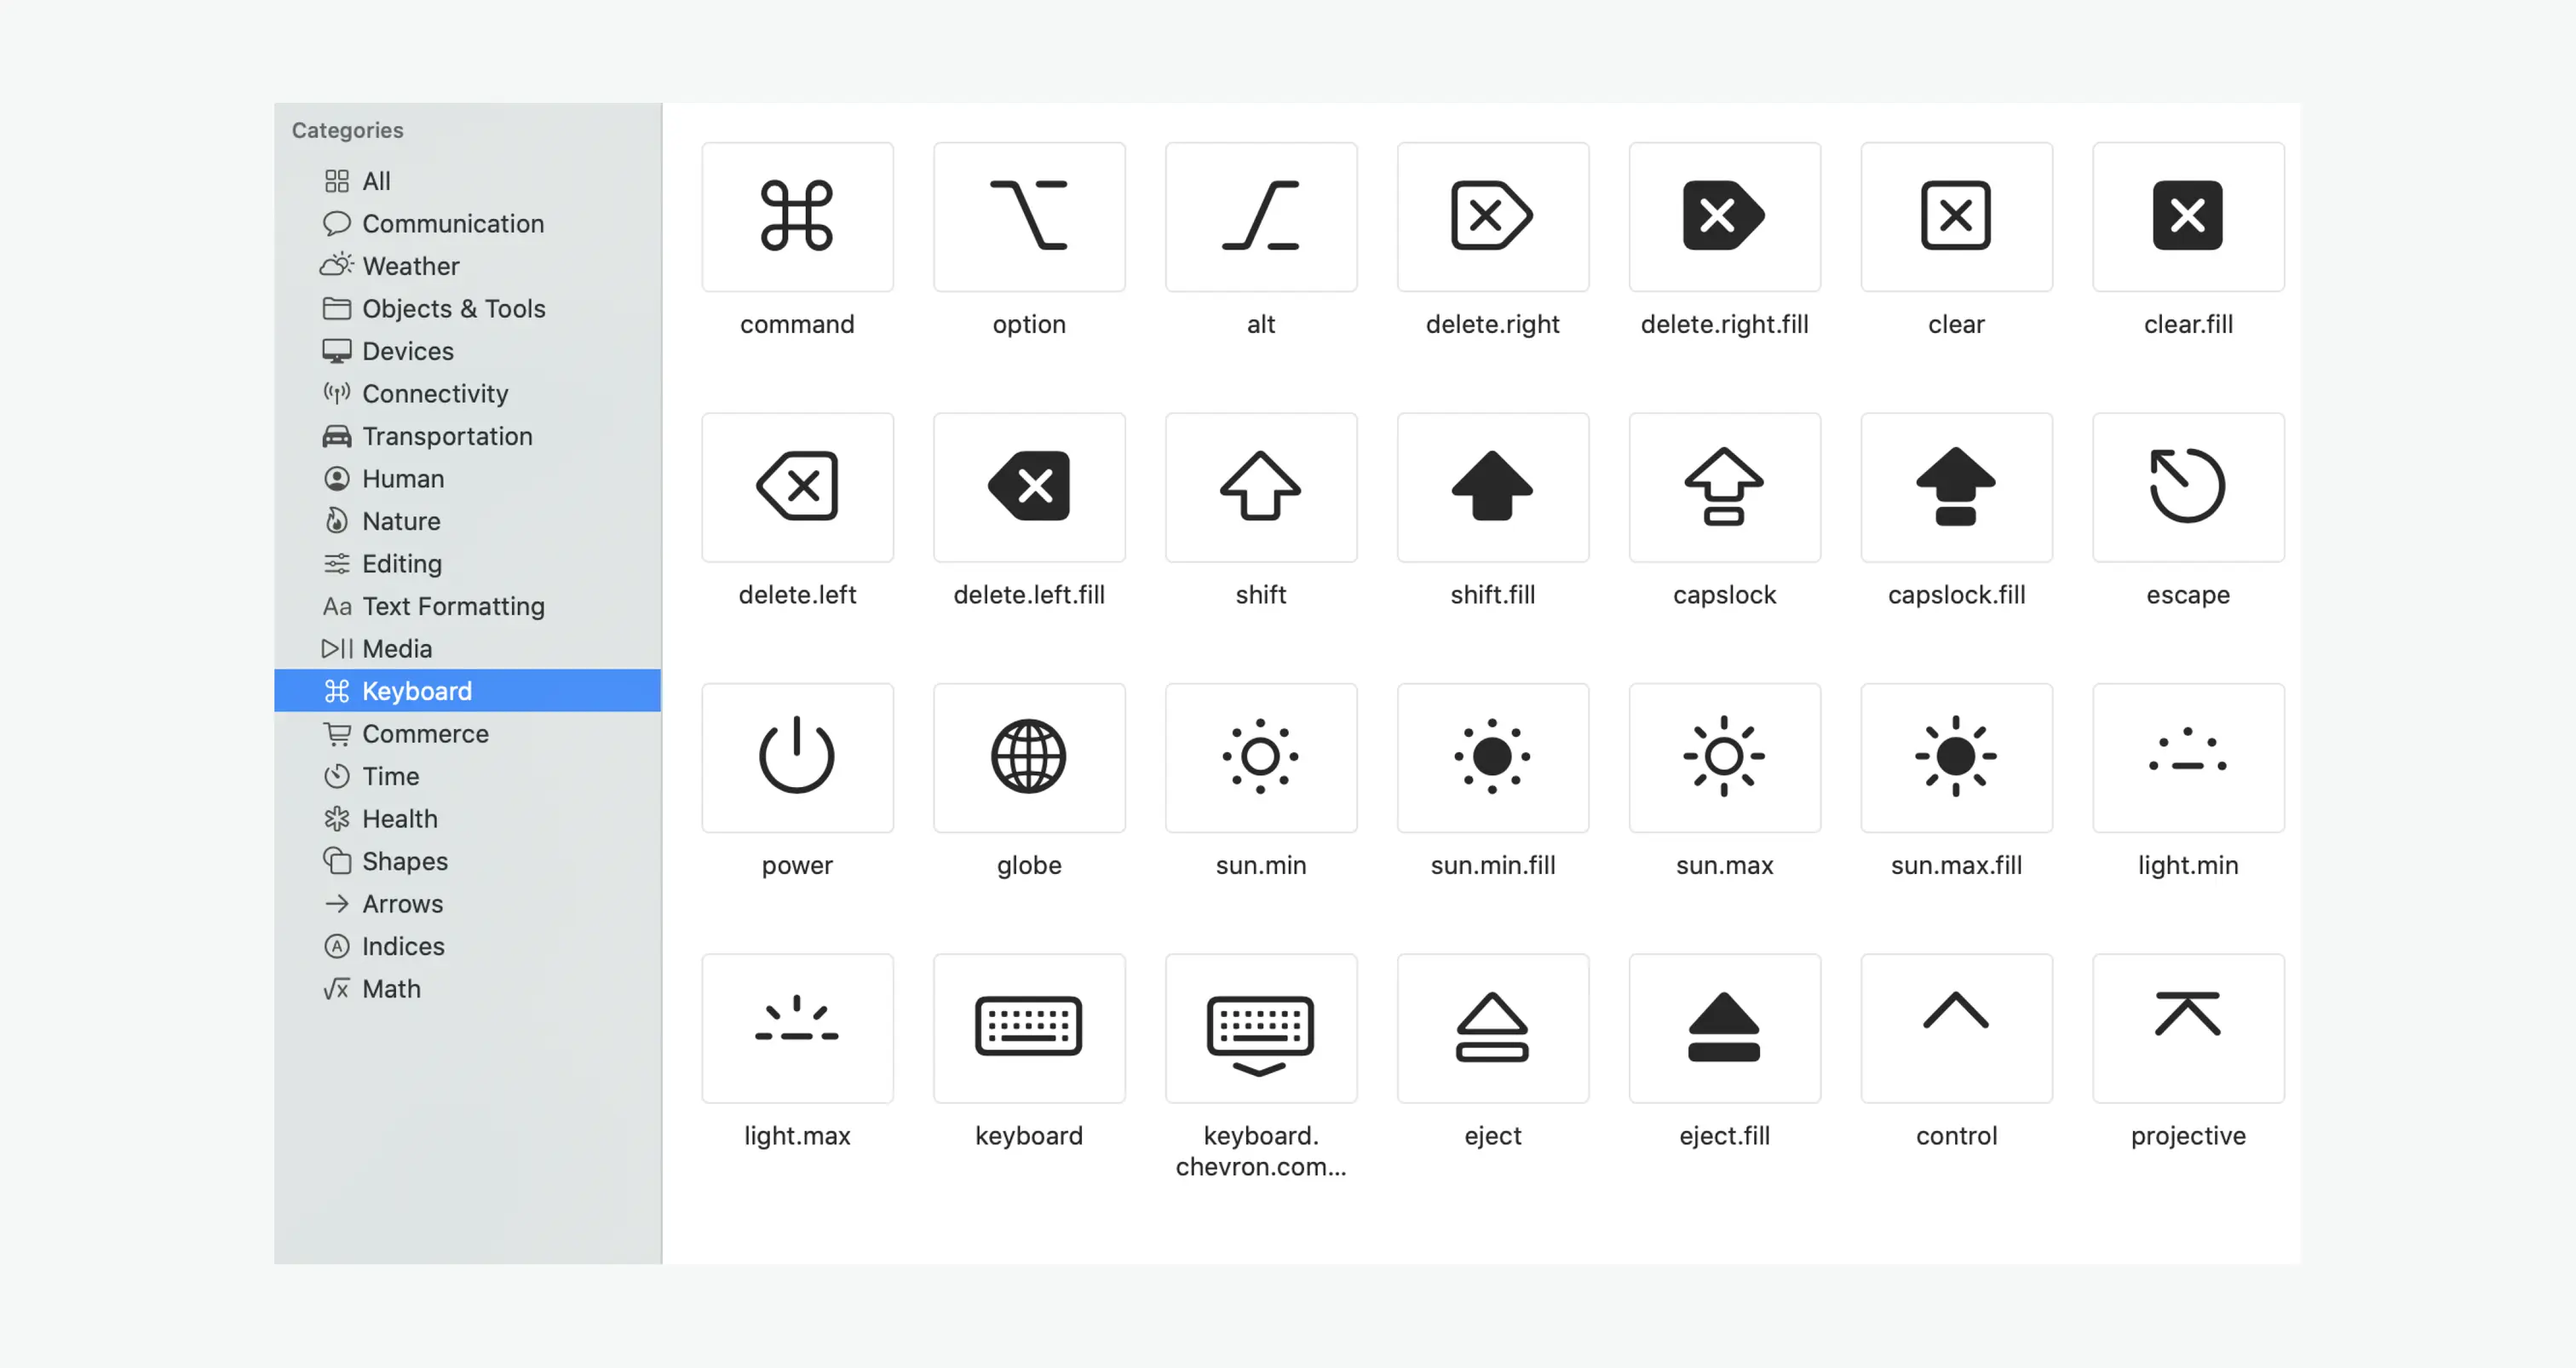 来自 Apple [SF Symbols](https://developer.apple.com/design/human-interface-guidelines/sf-symbols/overview/)的 icon